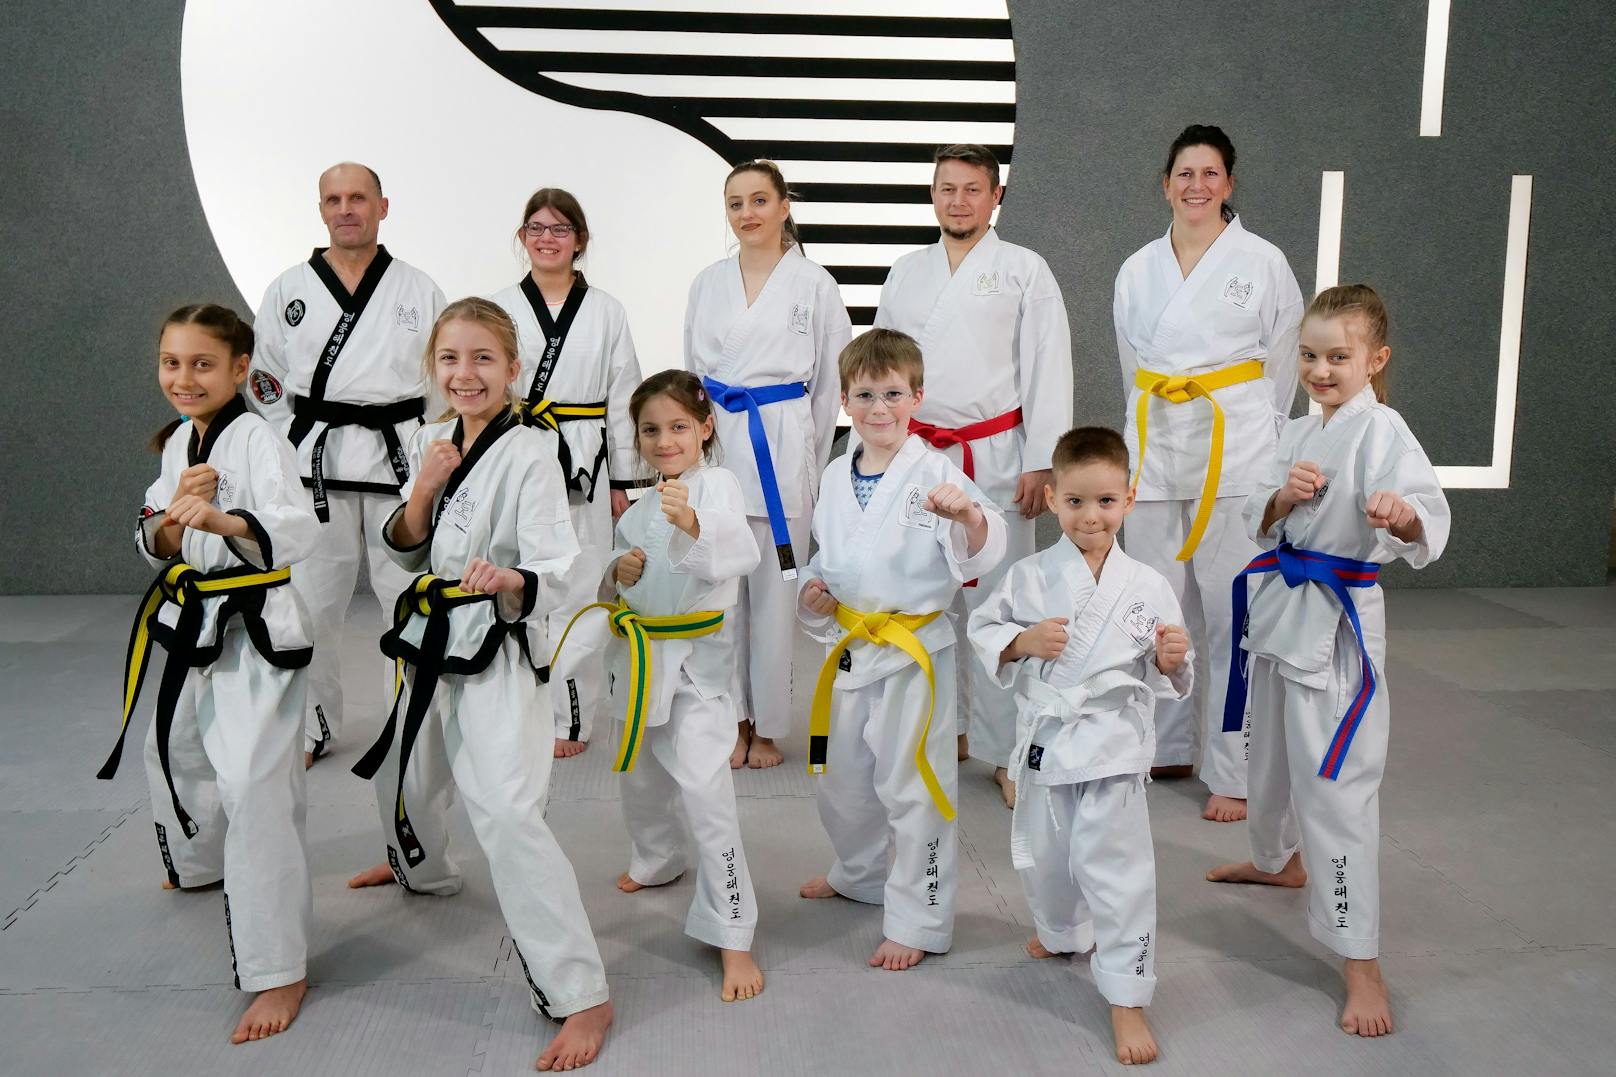 Die Motivation ist groß: Am 1. Mai öffnet Österreichs größte Kampfsportschule in Simmering ihre Tore.